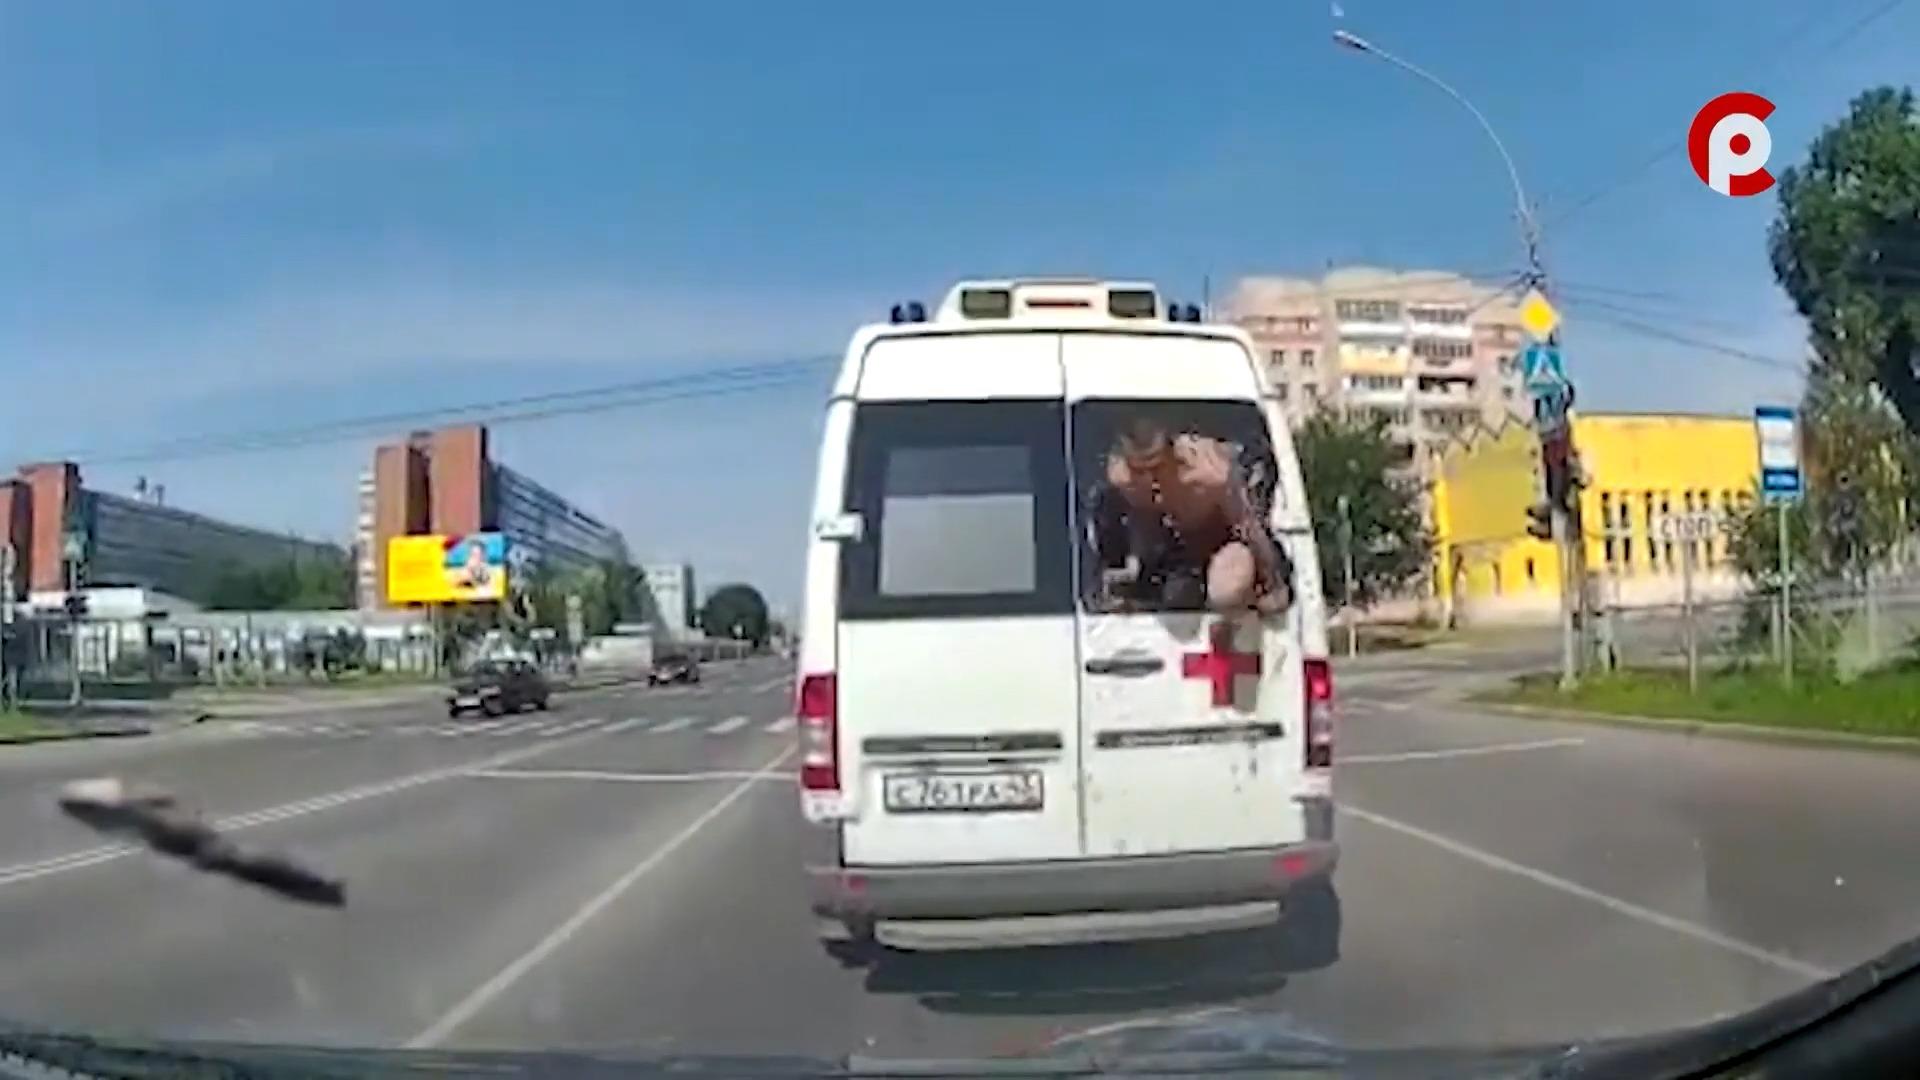 Halbnackter Patient springt aus fahrendem Krankenwagen Er will nicht ins Krankenhaus